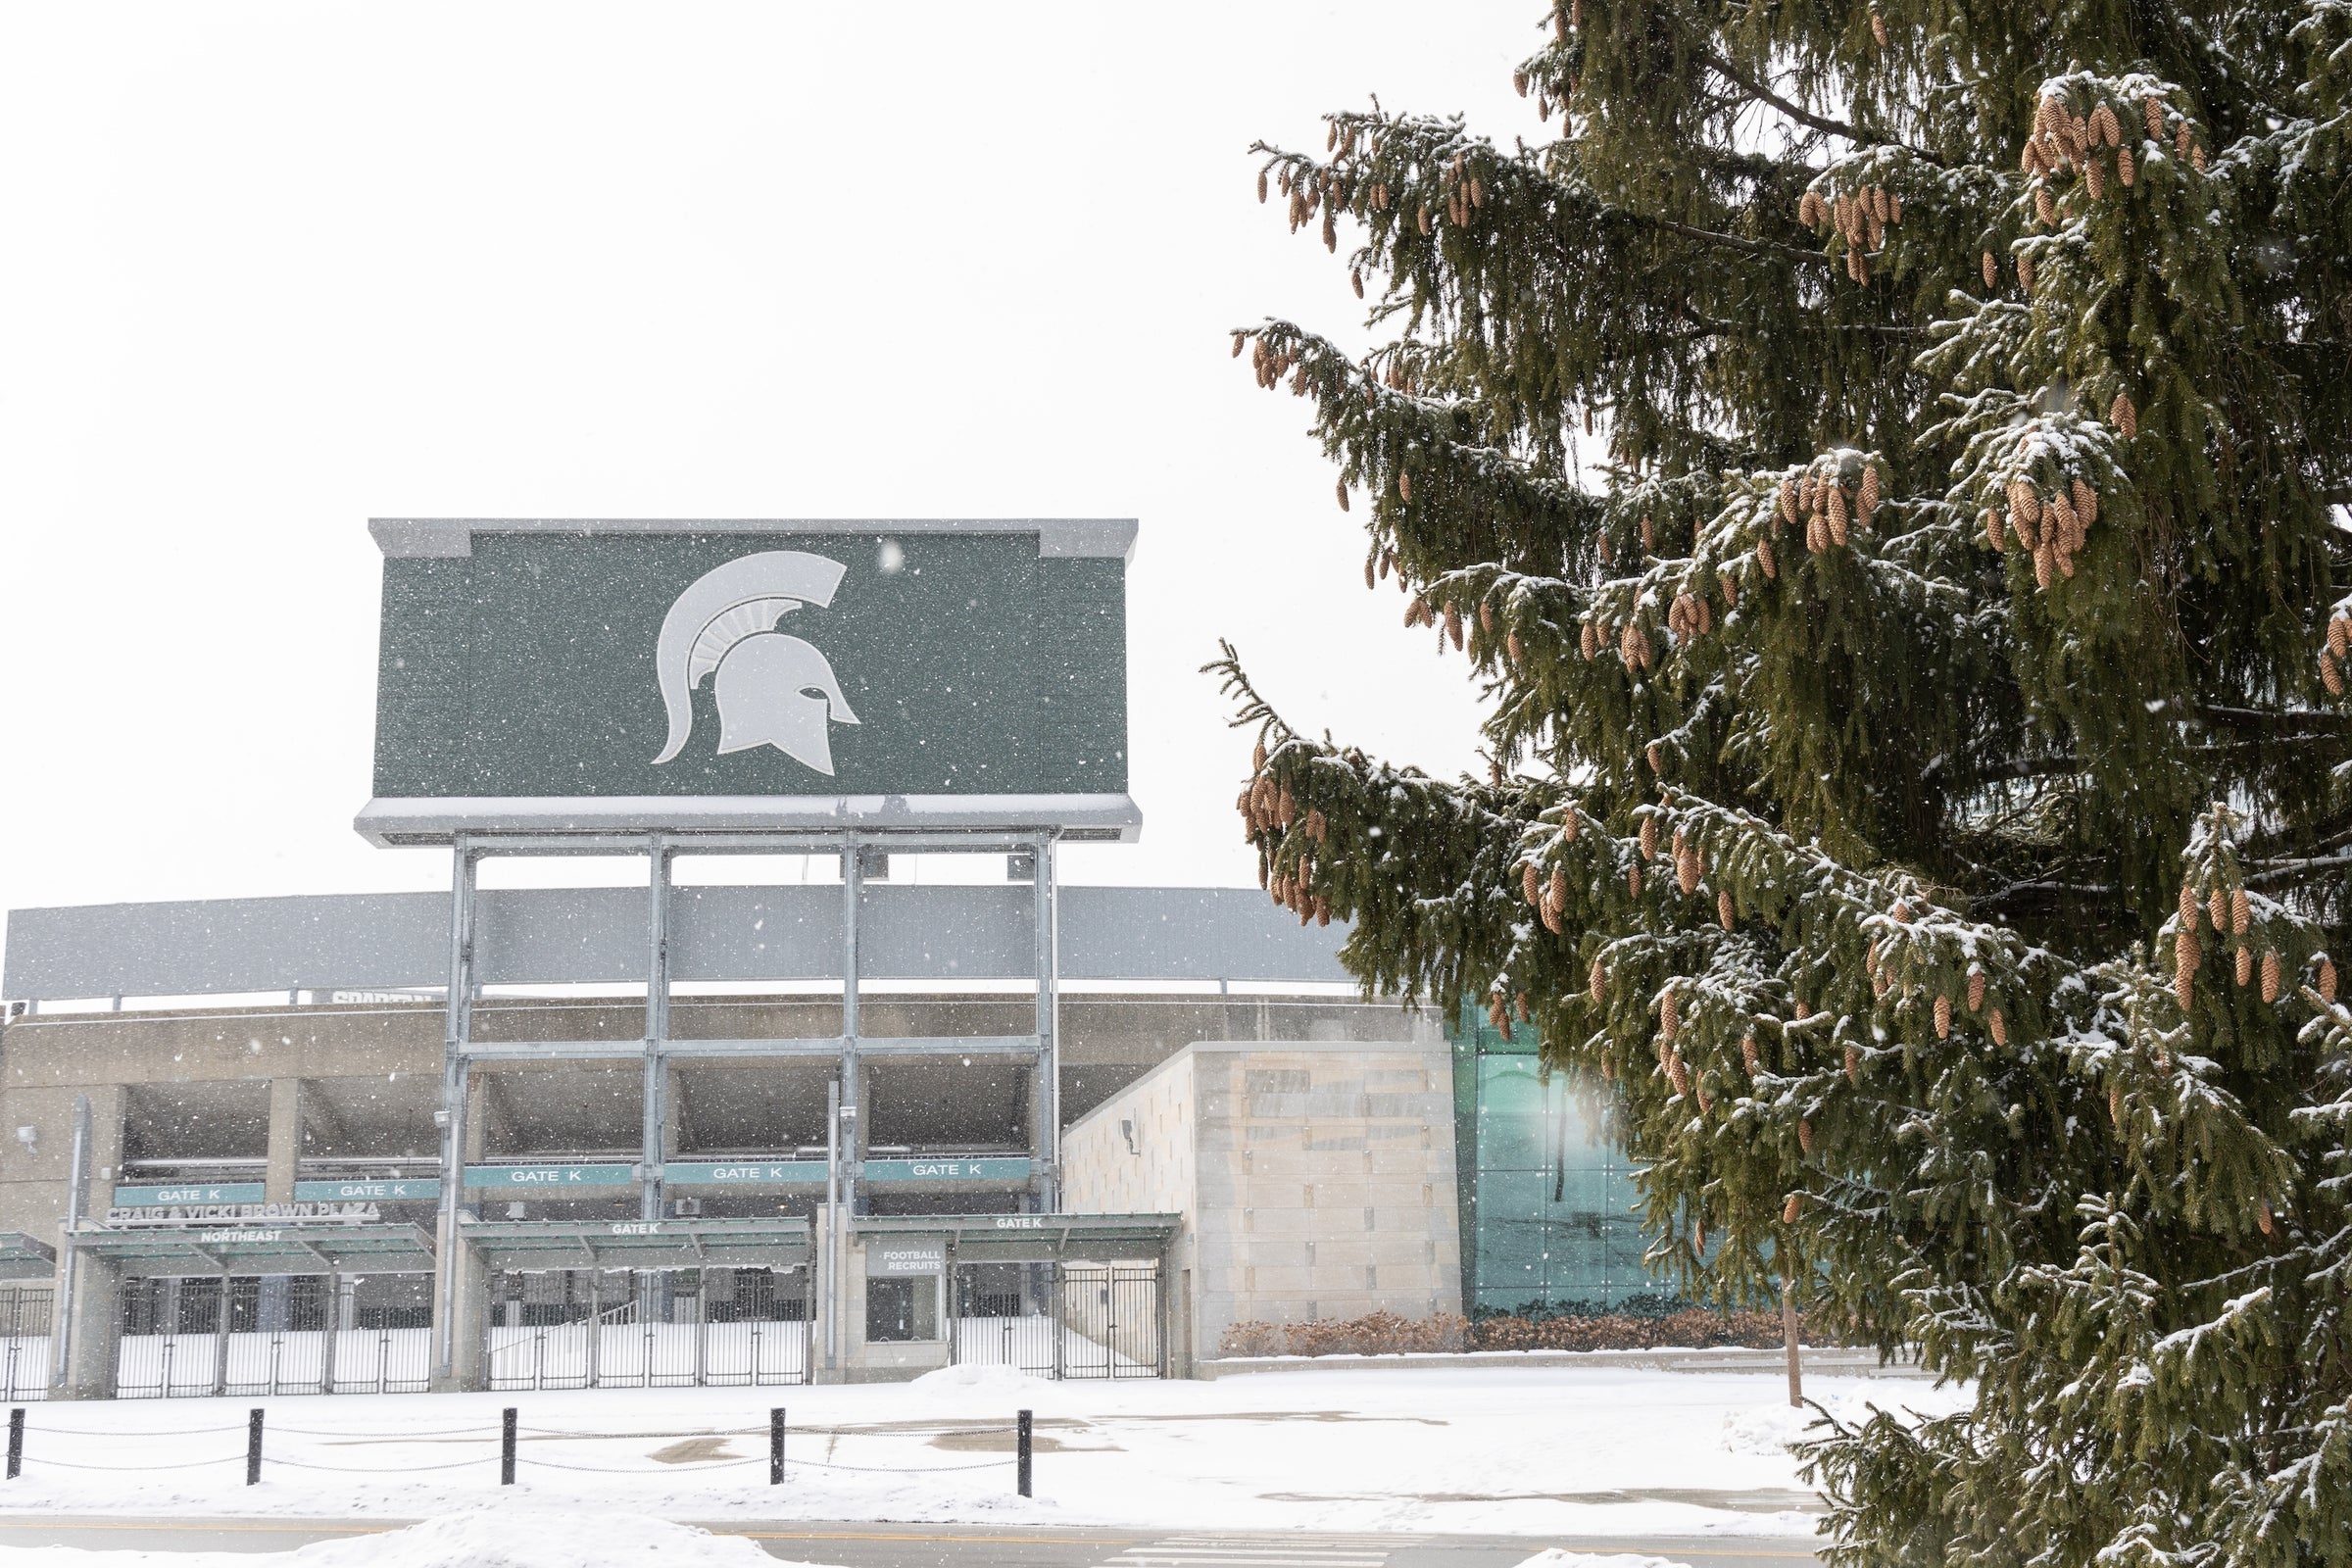 Michigan State Spartan Stadium Winter